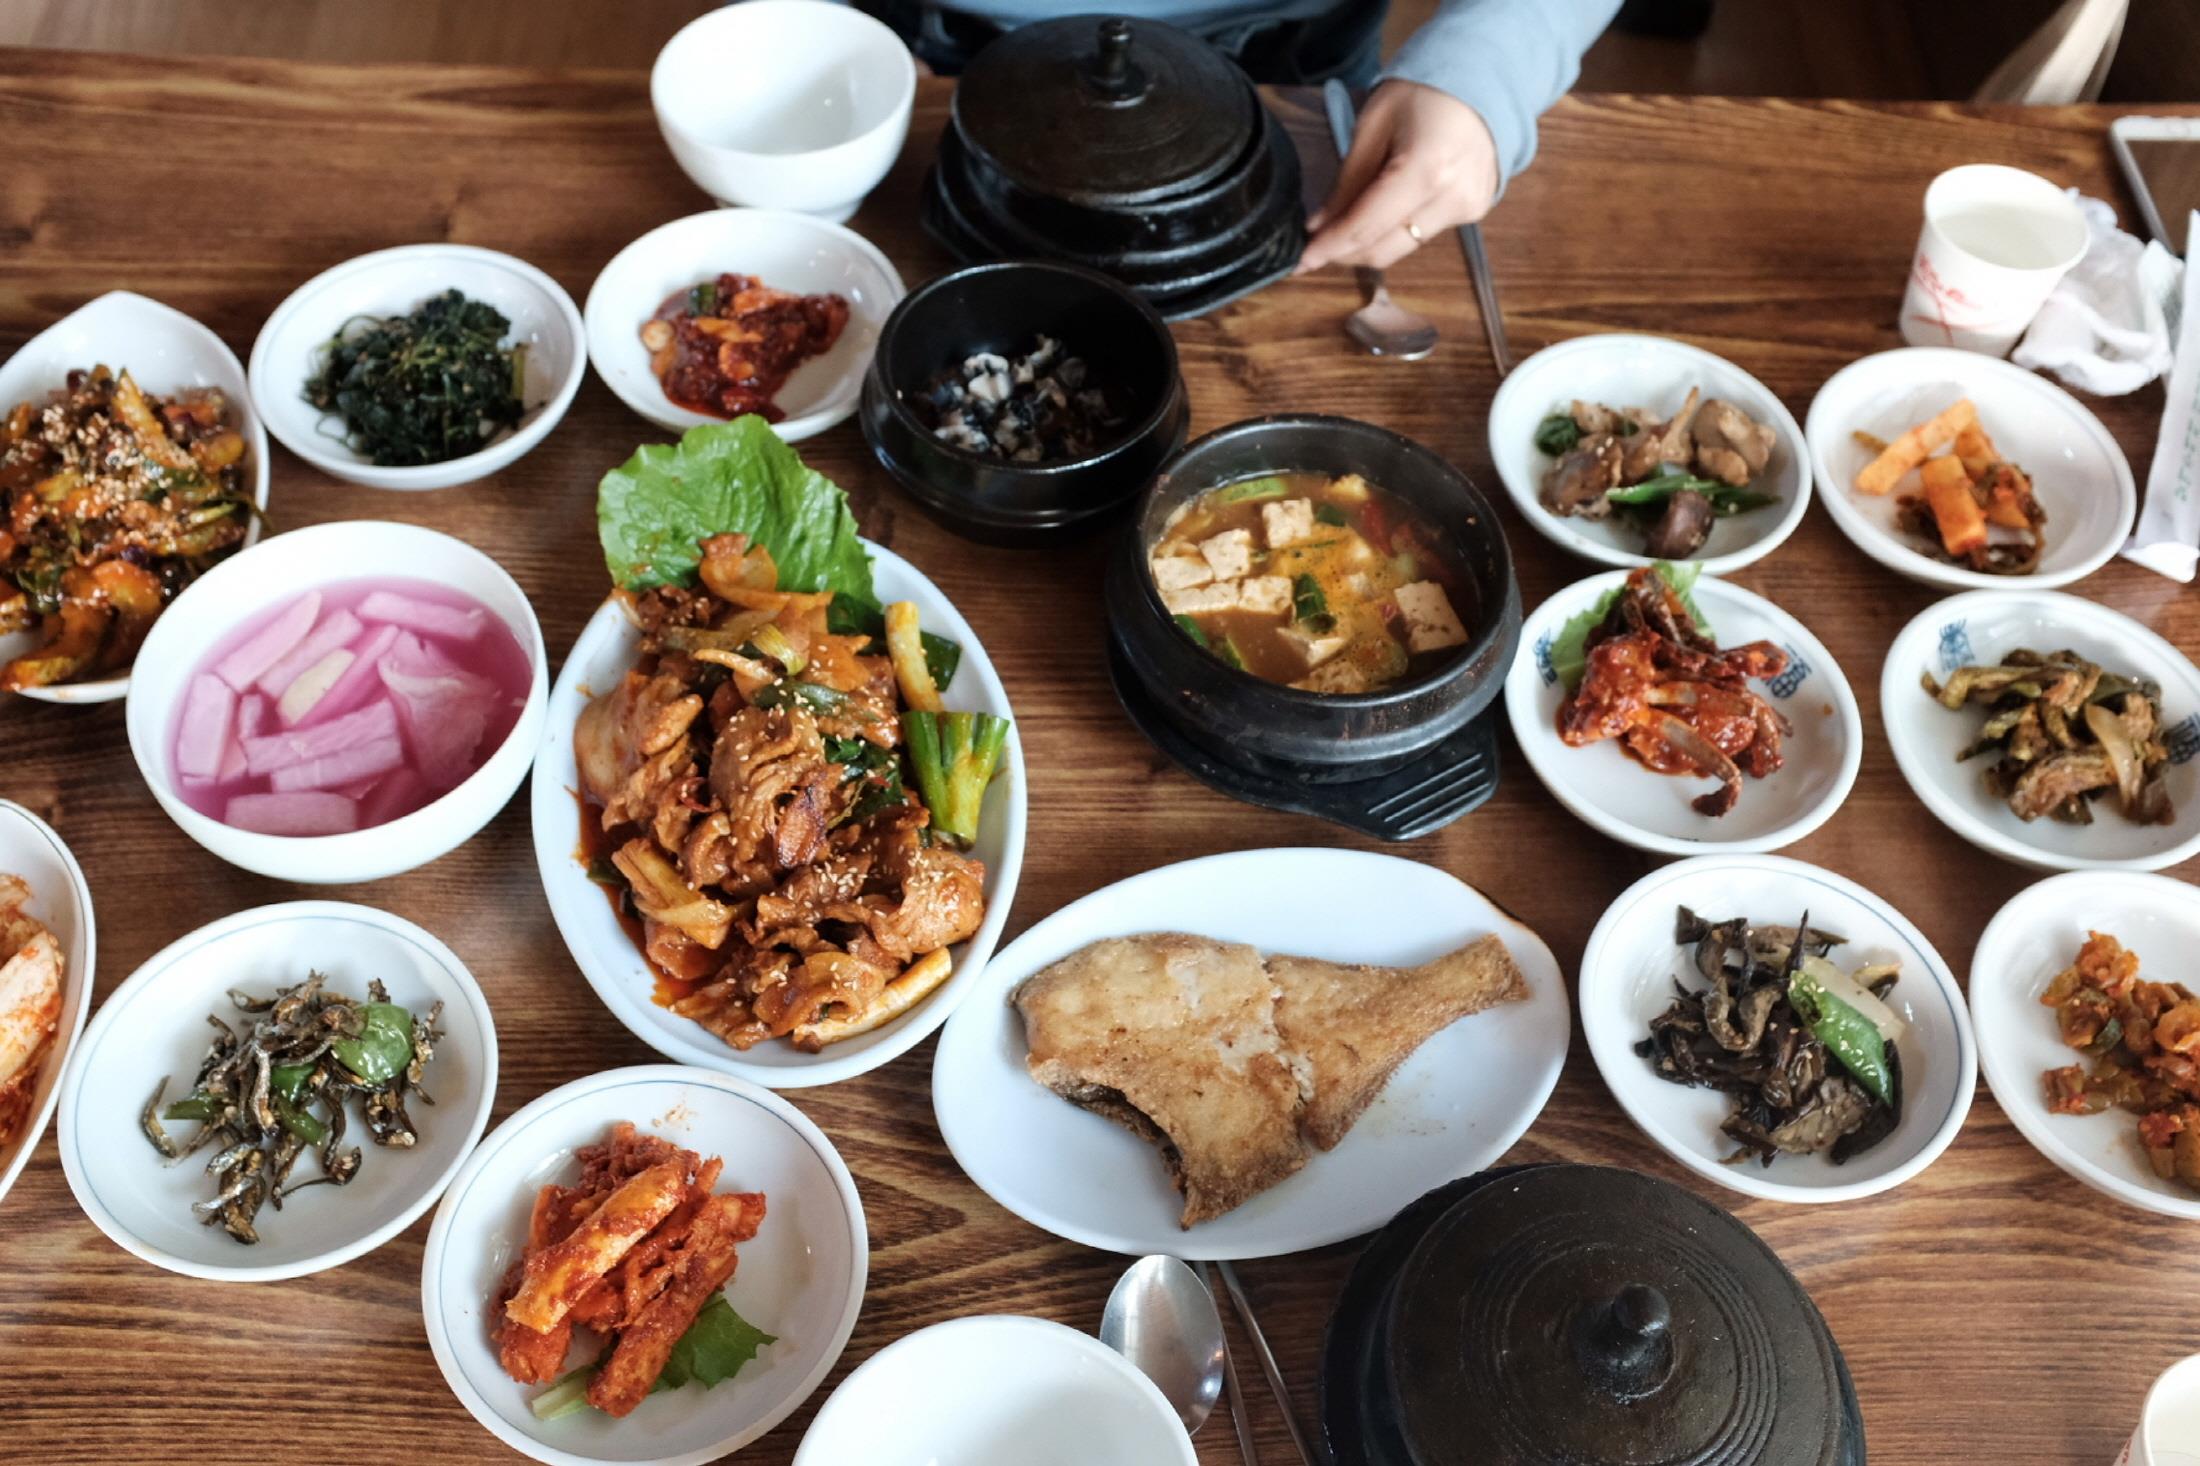 가마솥(한식당)  KAMASOT korean restaurant